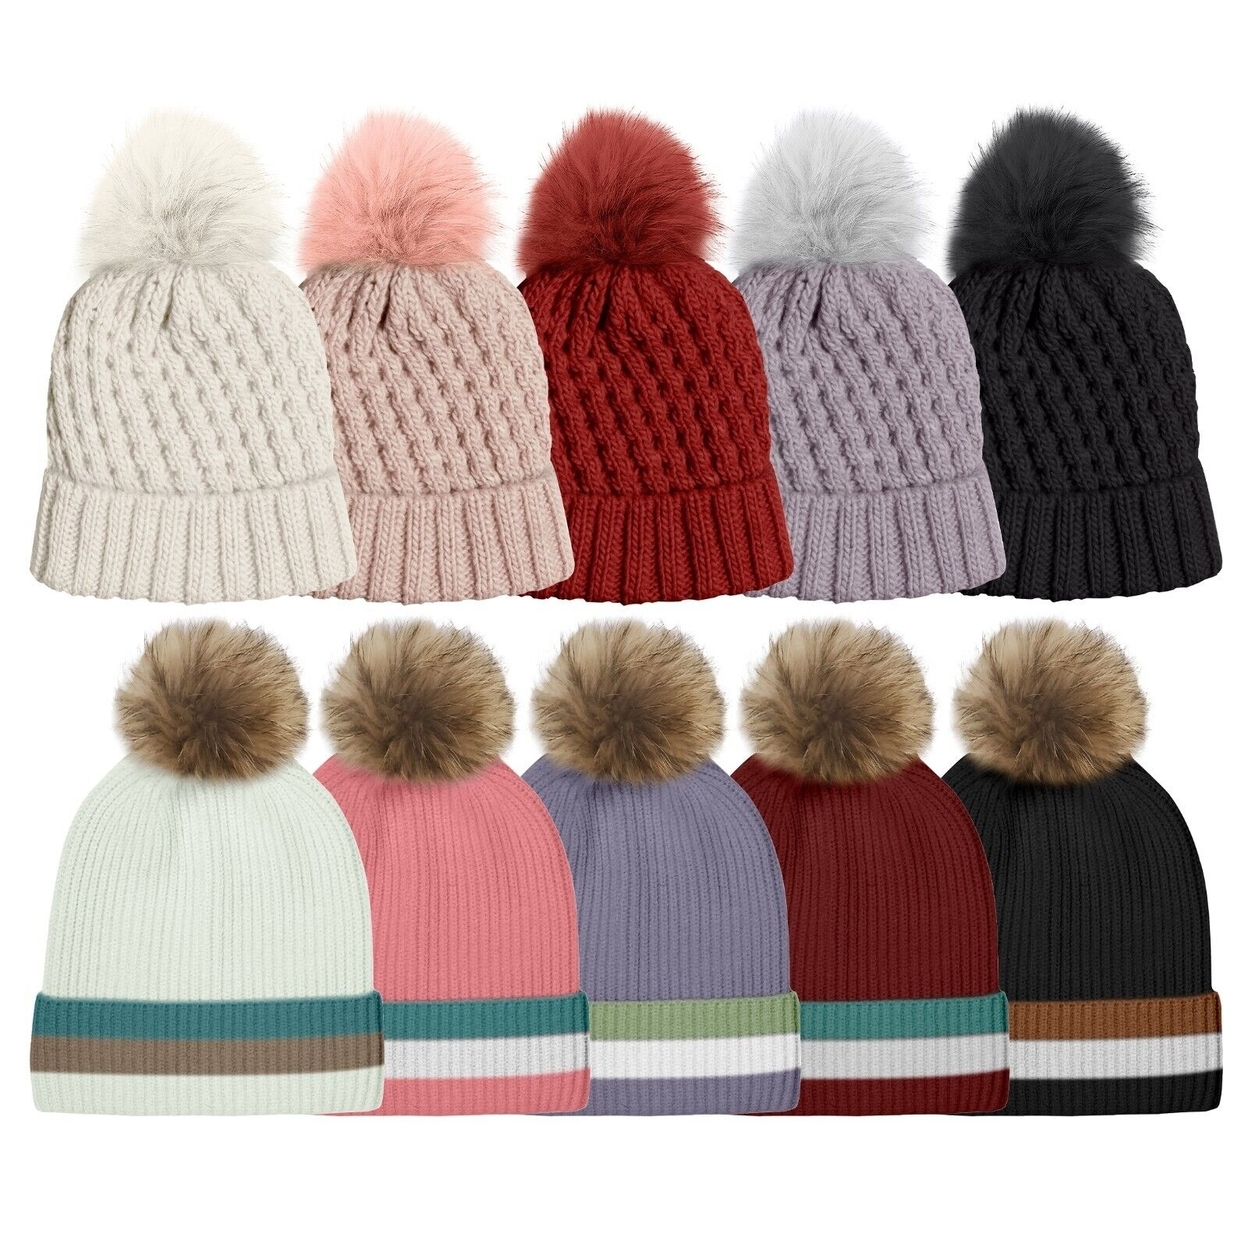 Women's Ultra Soft Winter Warm Knit Feel Pom Pom Hat W/ Faux Fur Lining - Striped